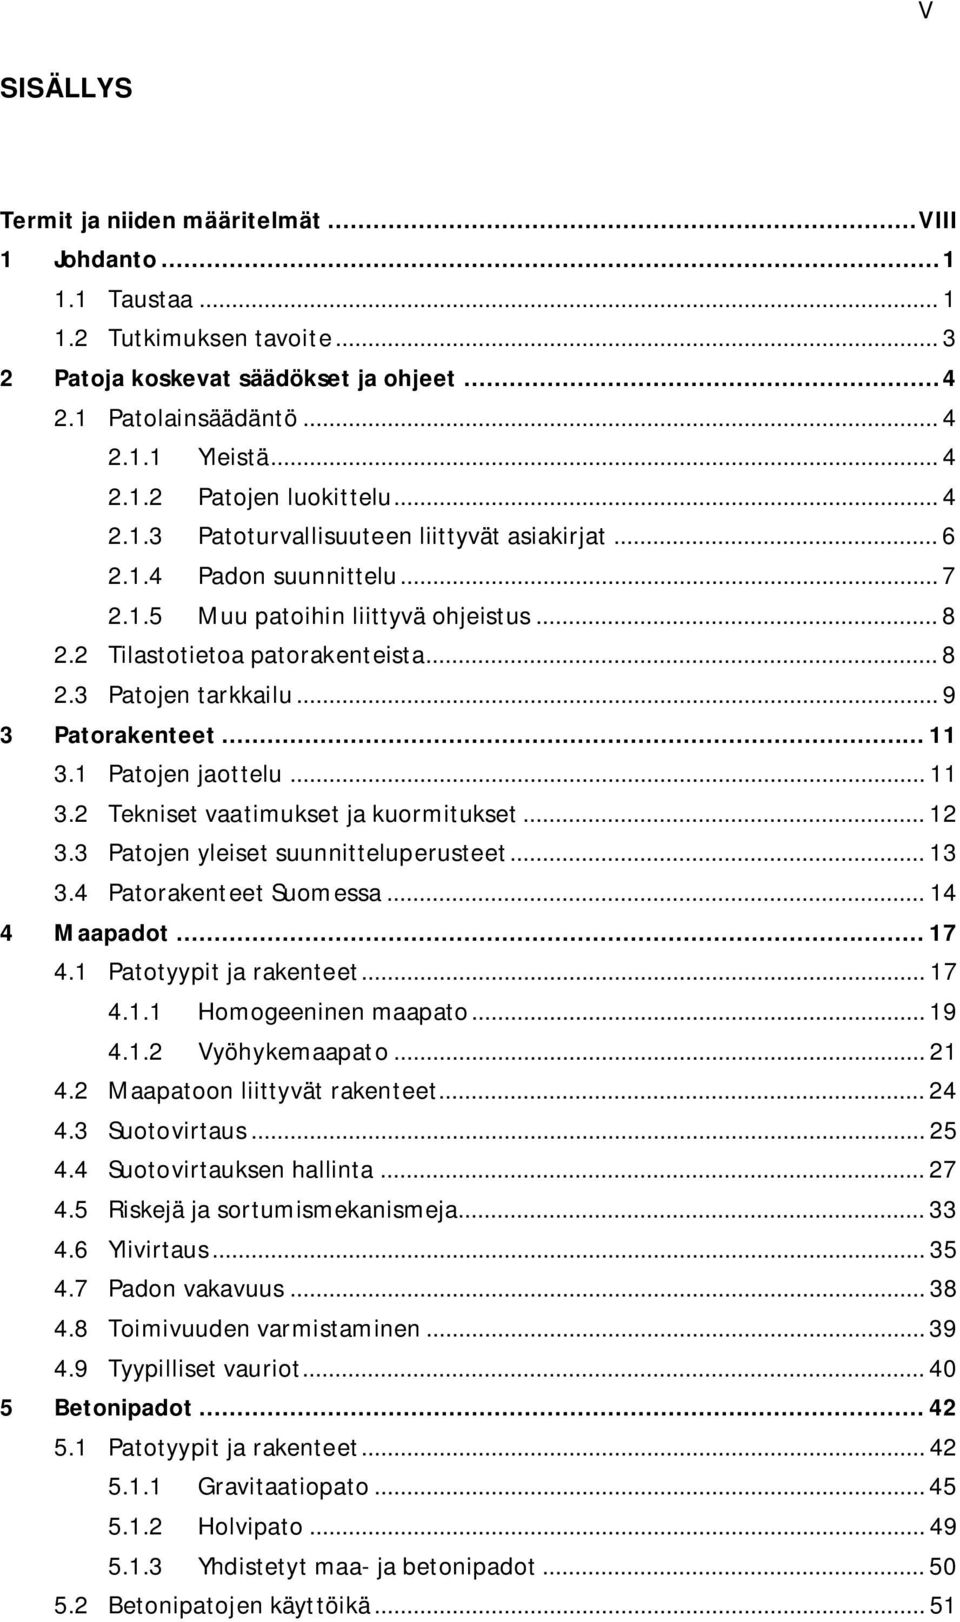 .. 9 3 Patorakenteet... 11 3.1 Patojen jaottelu... 11 3.2 Tekniset vaatimukset ja kuormitukset... 12 3.3 Patojen yleiset suunnitteluperusteet... 13 3.4 Patorakenteet Suomessa... 14 4 Maapadot... 17 4.